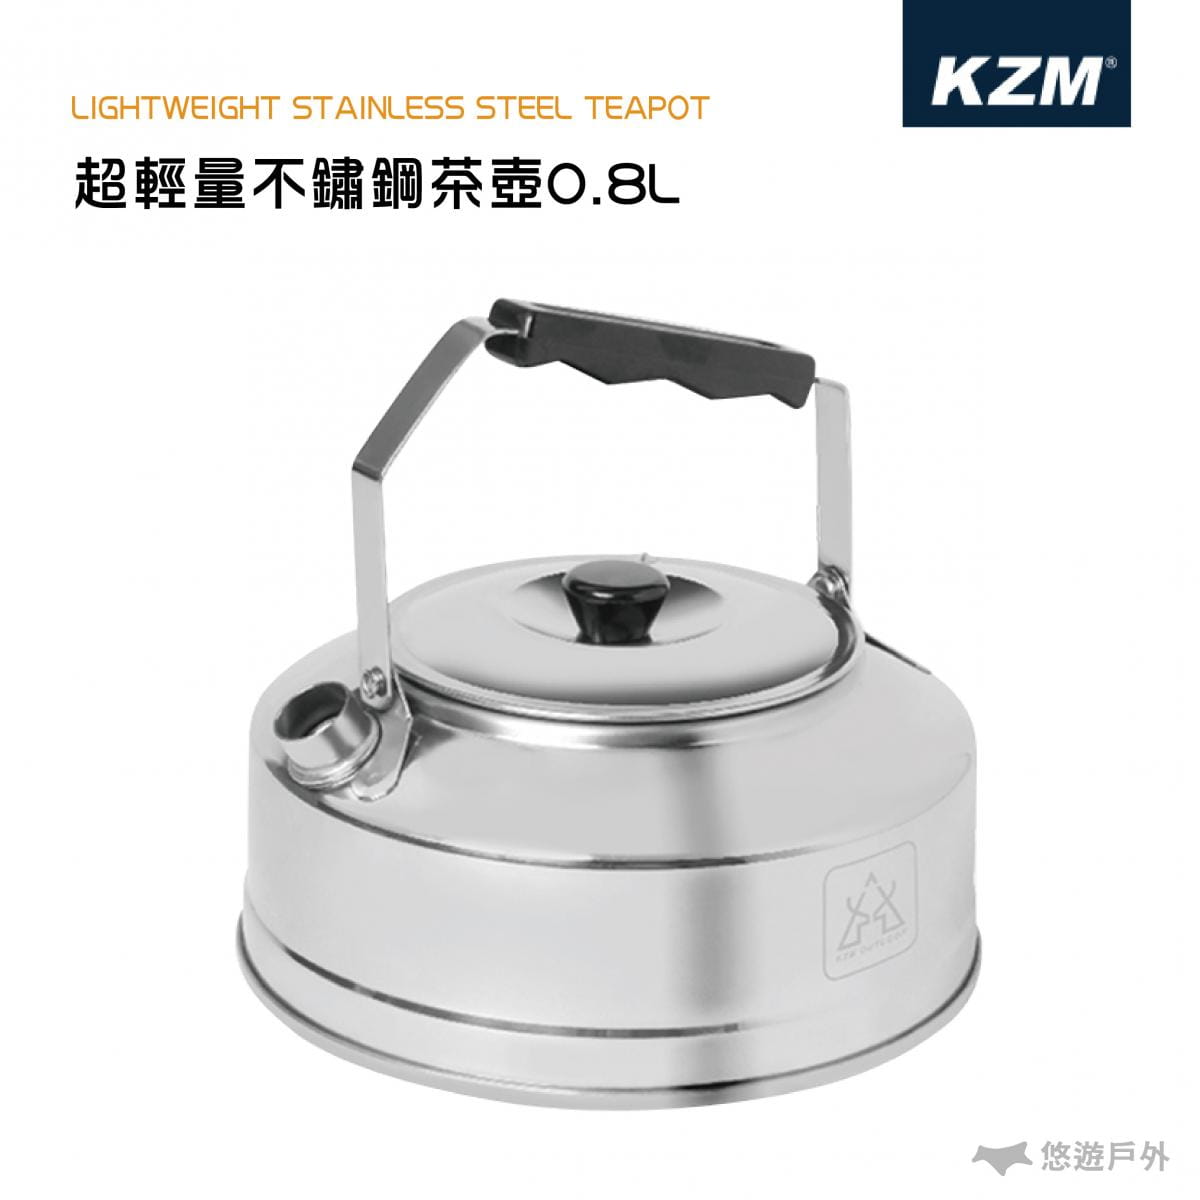 【悠遊戶外】KAZMI KZM 超輕量不鏽鋼茶壺0.8L 0